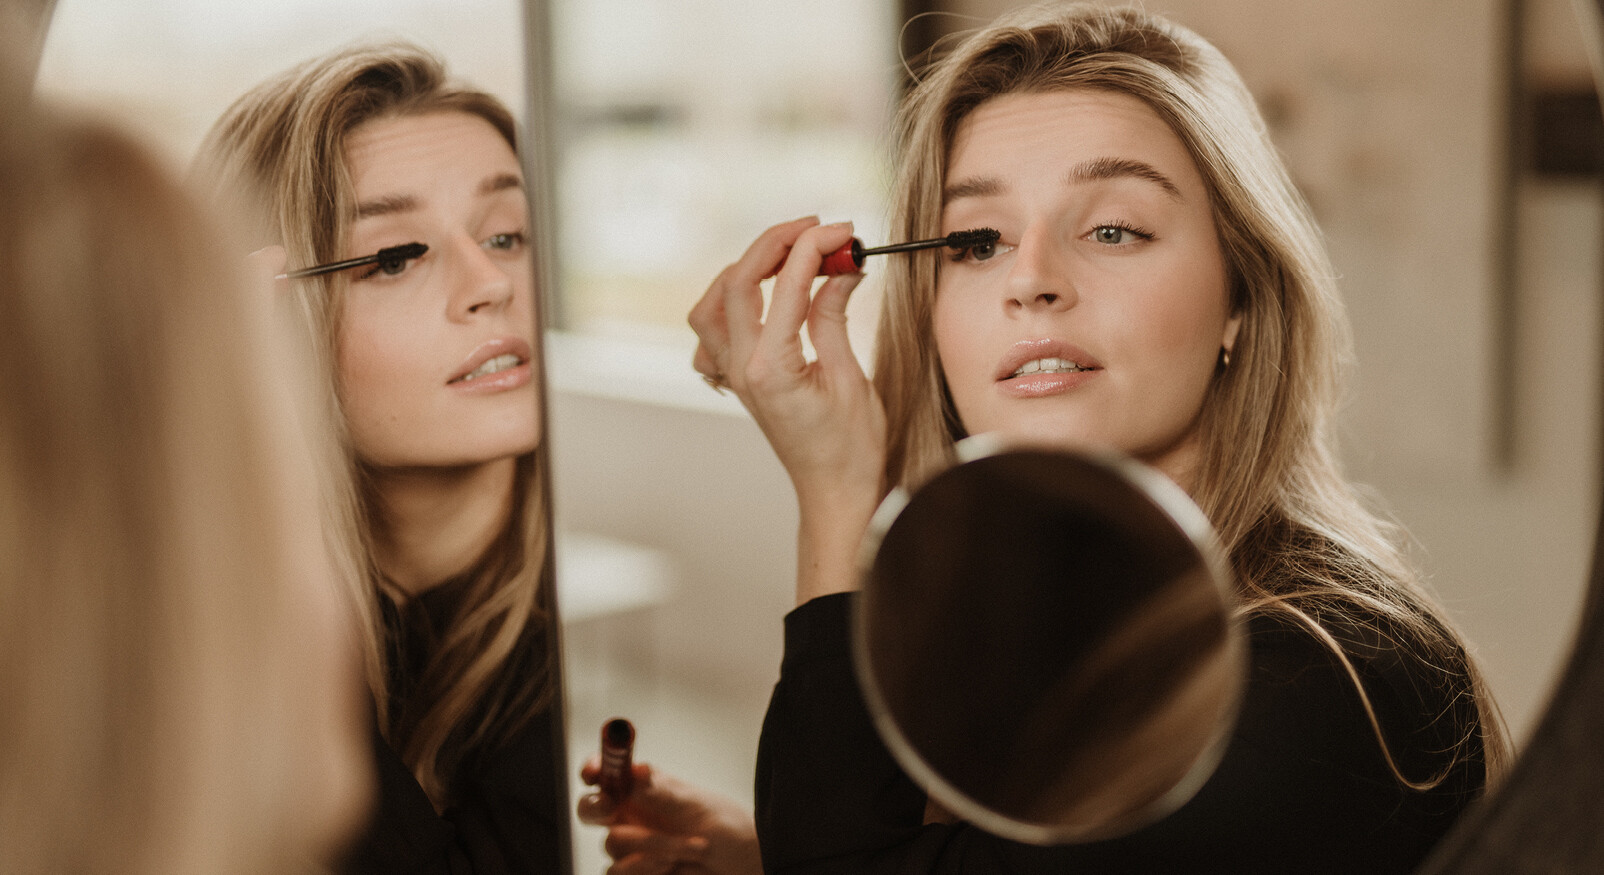 Lotte mascara aaanbrengen wimpers via spiegel